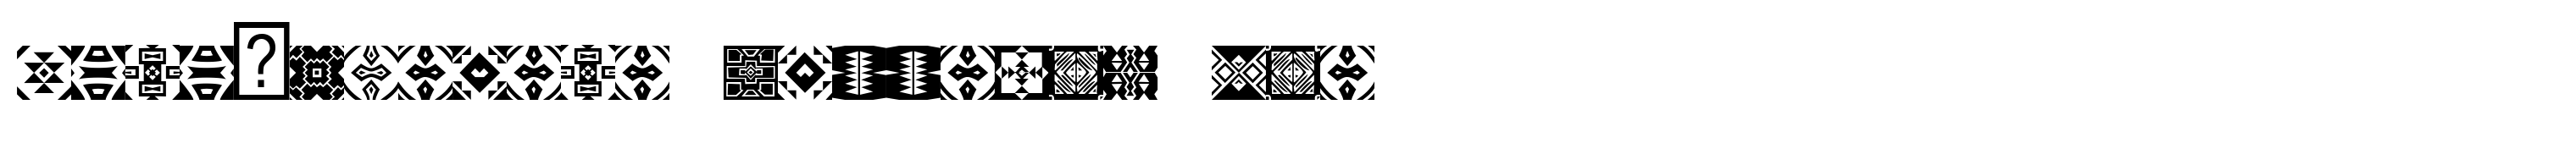 Zulu-Ndebele Patterns One